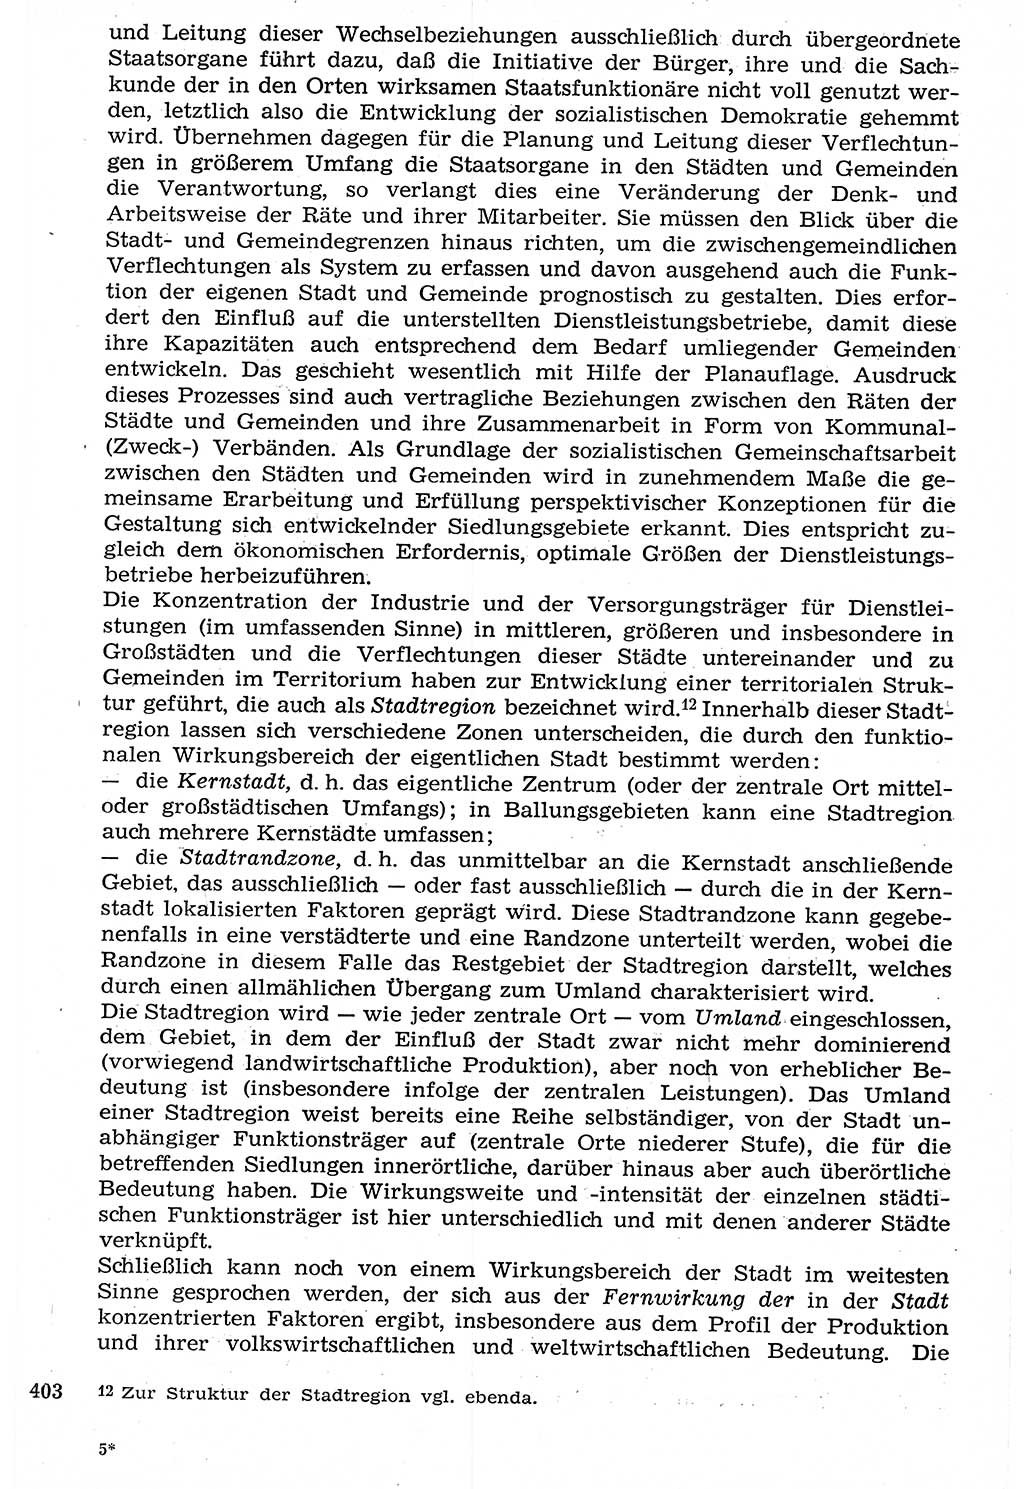 Staat und Recht (StuR), 17. Jahrgang [Deutsche Demokratische Republik (DDR)] 1968, Seite 403 (StuR DDR 1968, S. 403)